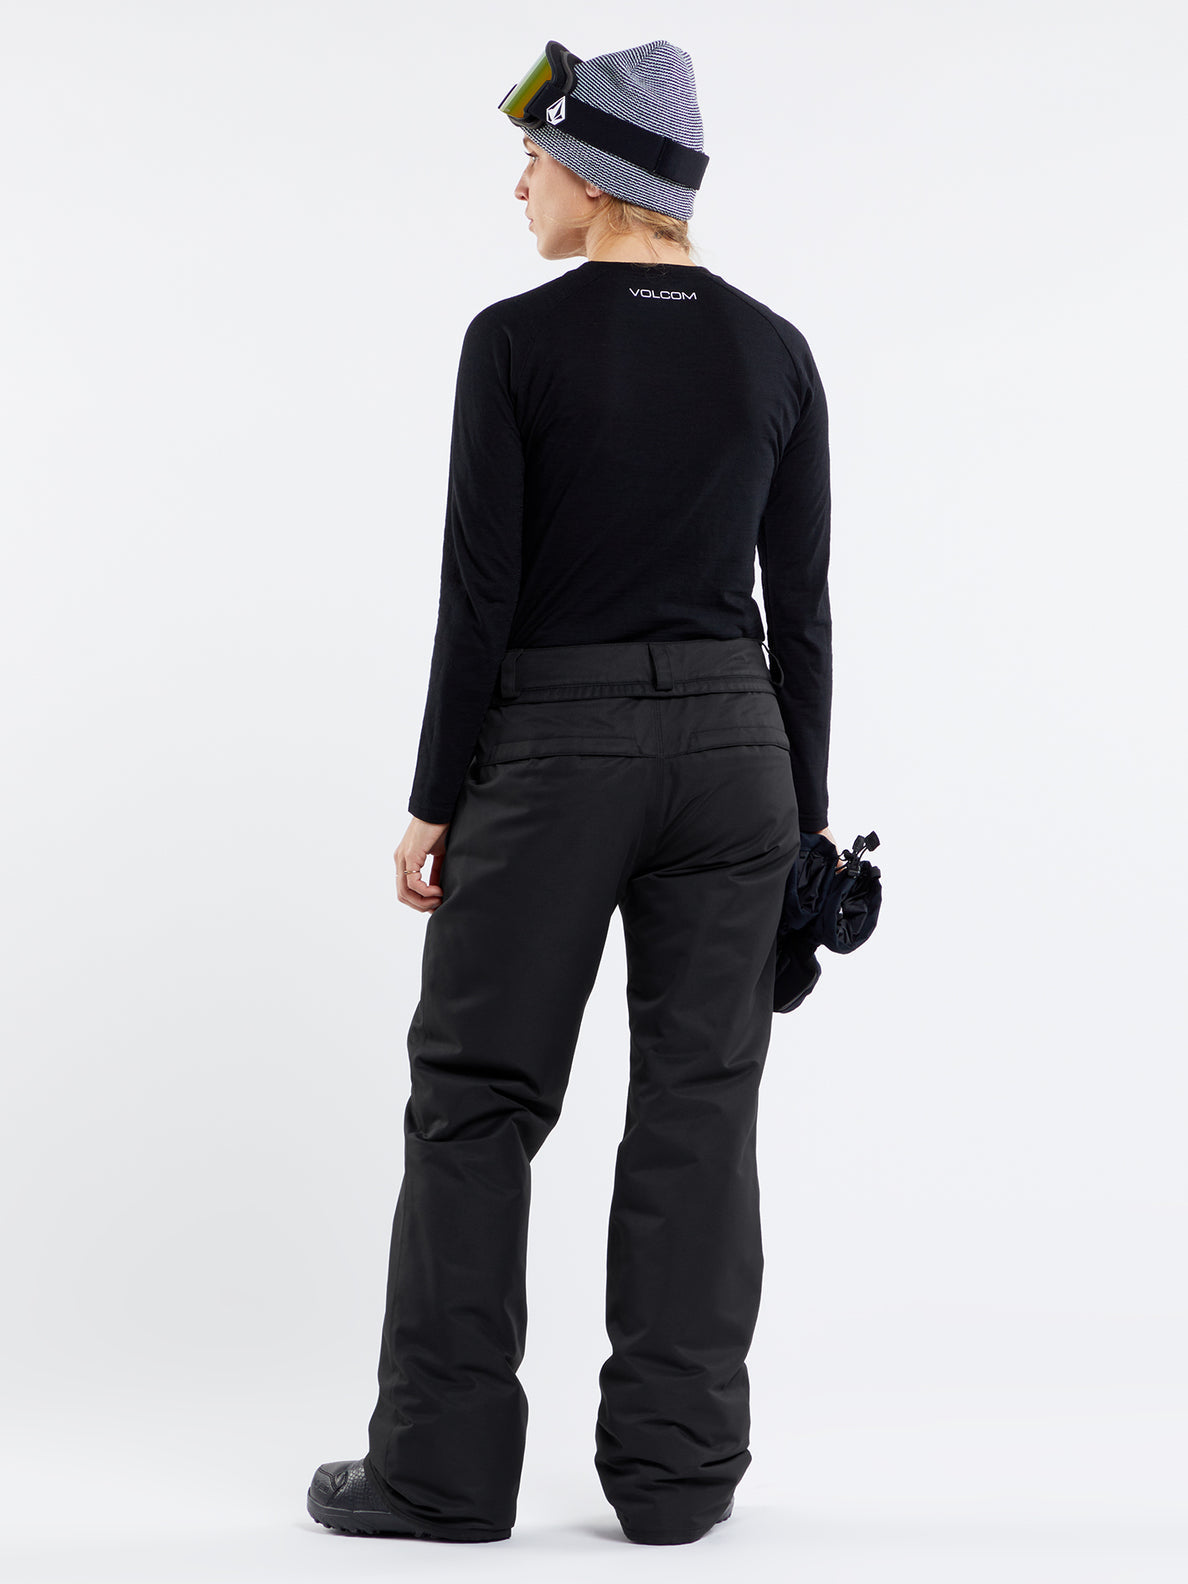 pantalon-isole-femme-frochickie-noir-volcom-snow-pant-dm2-shop-02